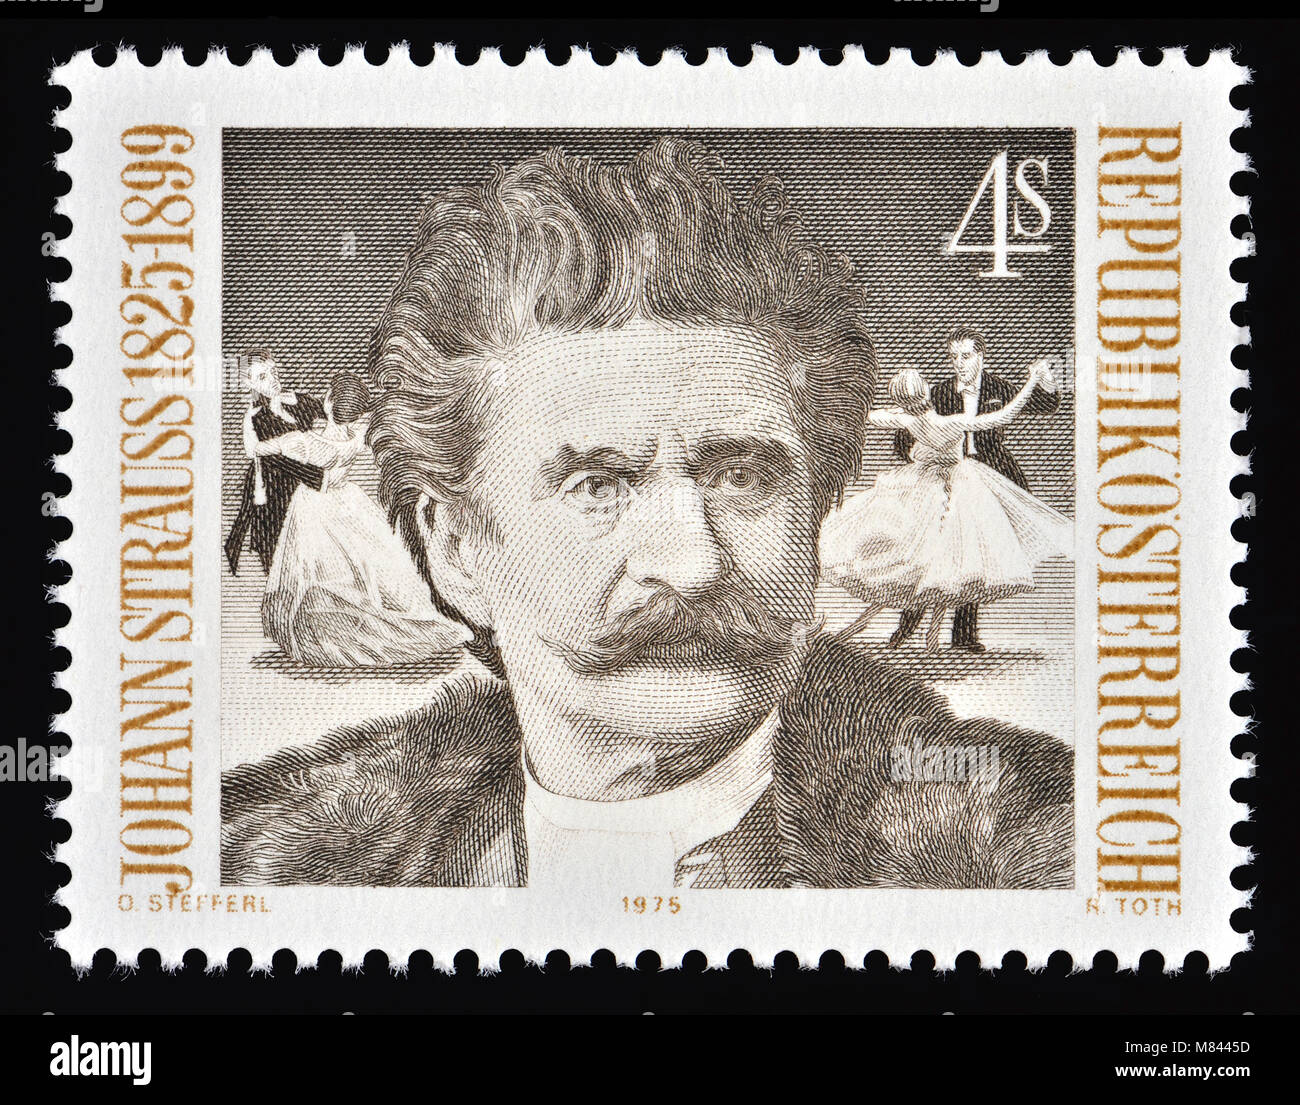 Österreichische Briefmarke (1975): Johann Strauss II/Johann Strauss Jr/der Jüngere (1825-1899), Sohn von Johann Strauss I. österreichischen Komponisten des Lichts Stockfoto